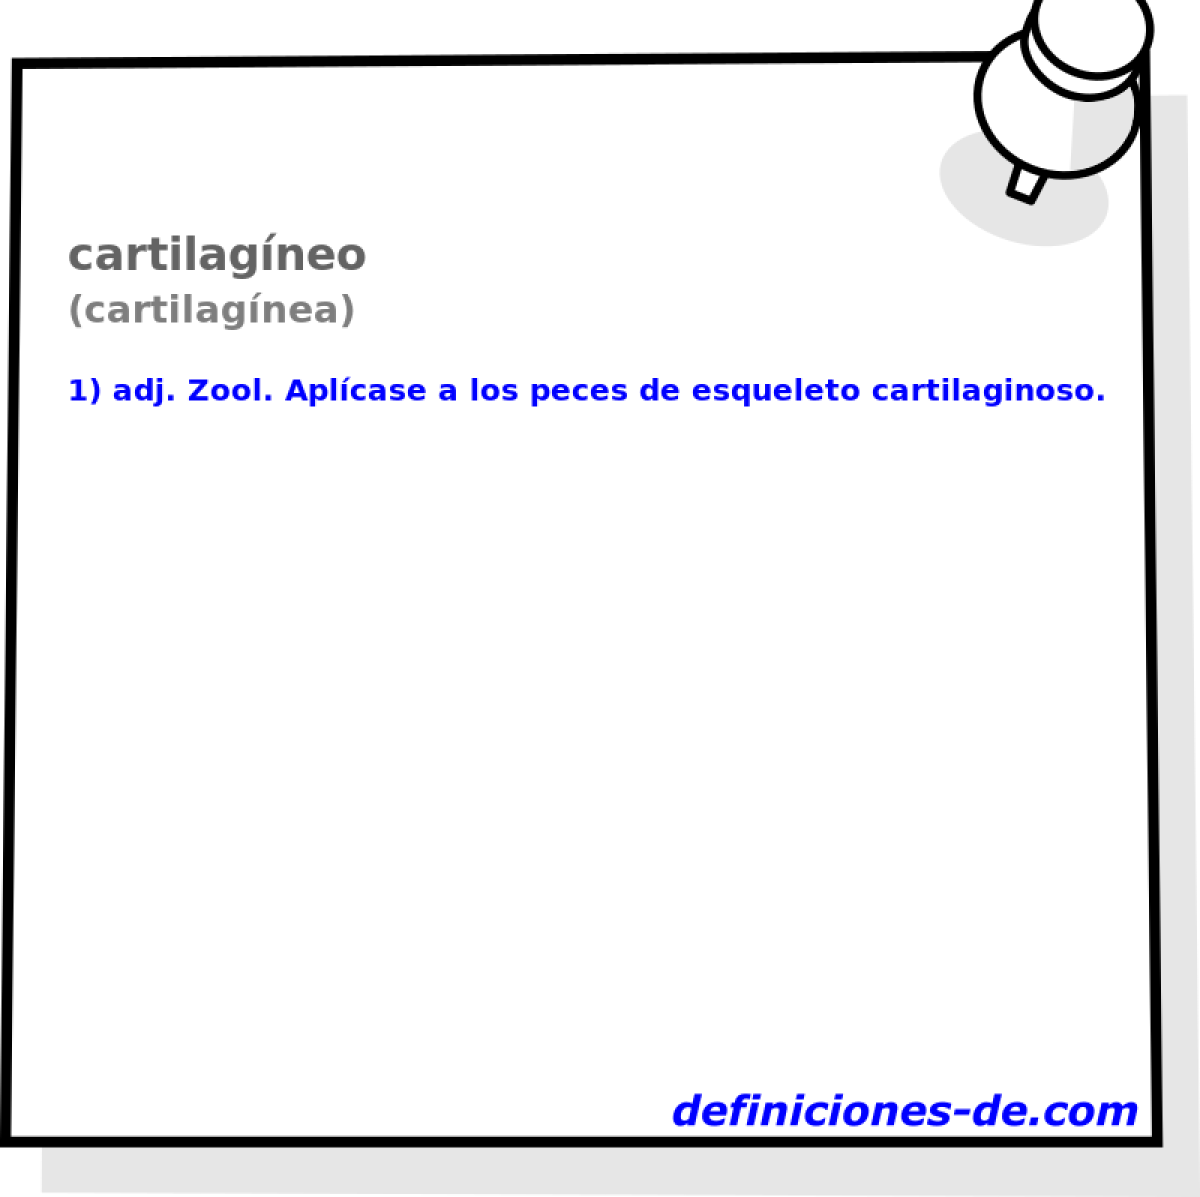 cartilagneo (cartilagnea)